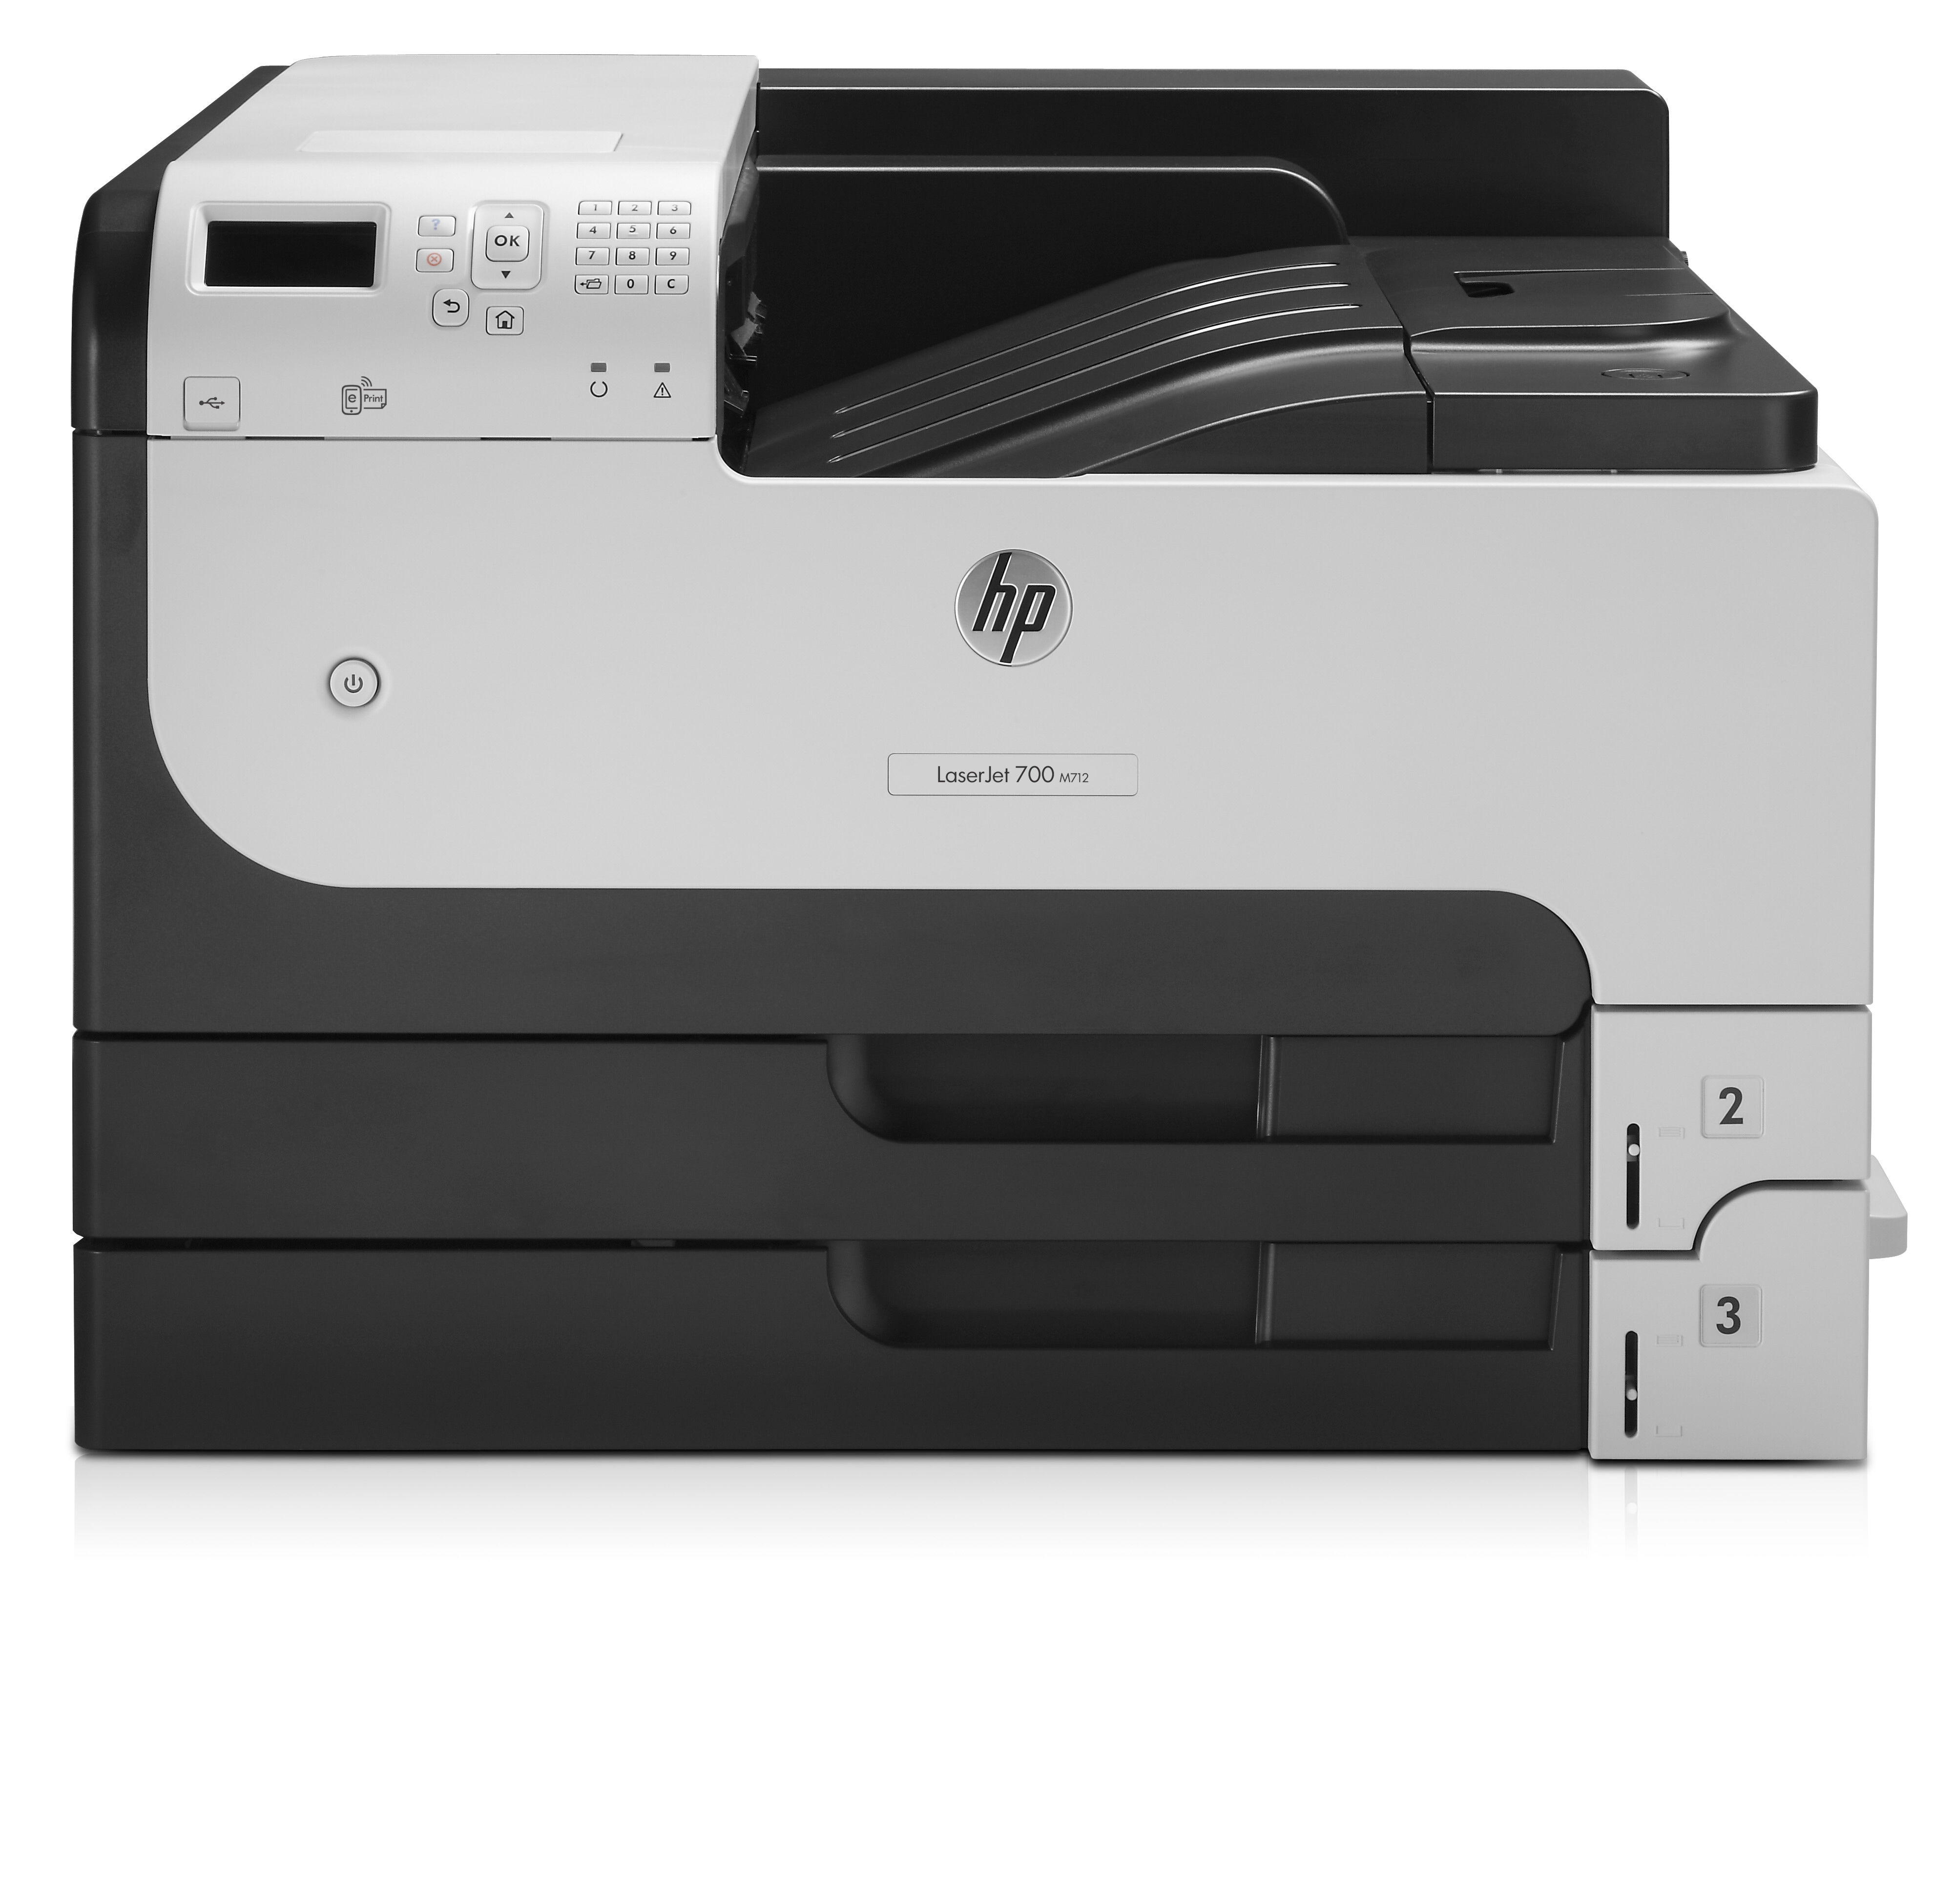 HP Stampante laser  LaserJet Enterprise 700 M712dn, Bianco e nero, per Aziendale, Stampa, Porta USB frontale, Stampa fronte/retro [CF236A#B19]